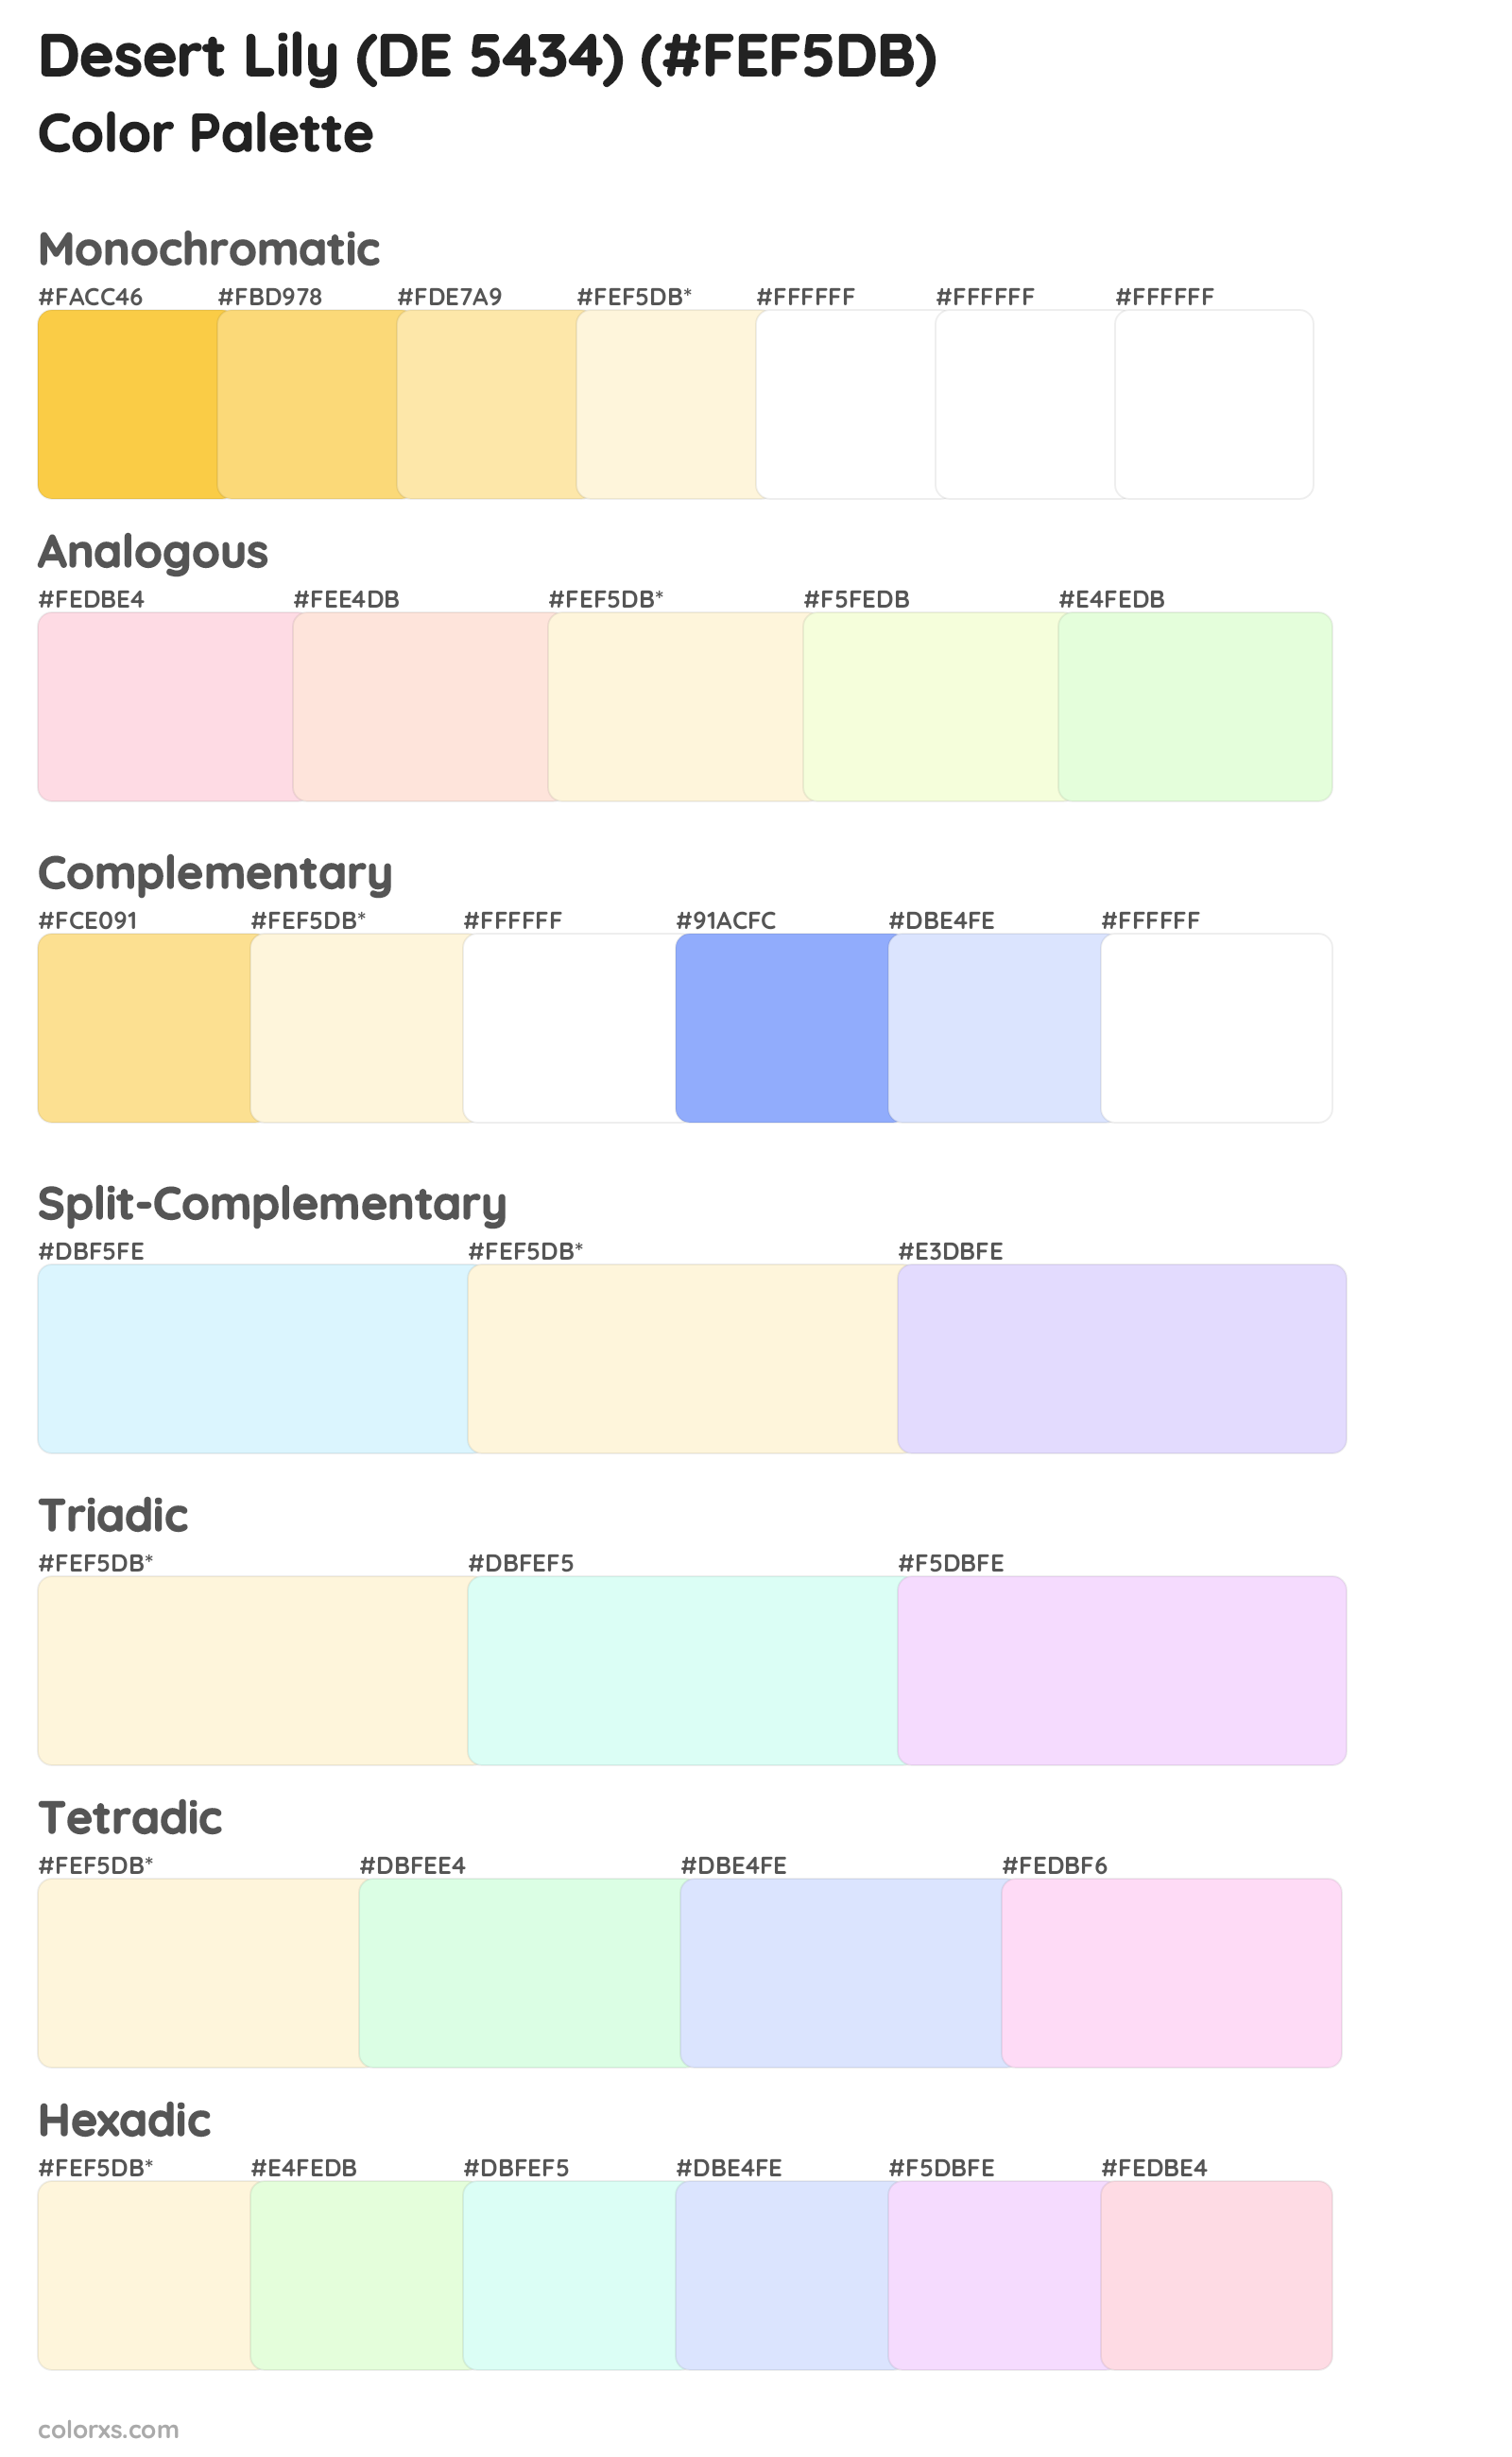 Desert Lily (DE 5434) Color Scheme Palettes